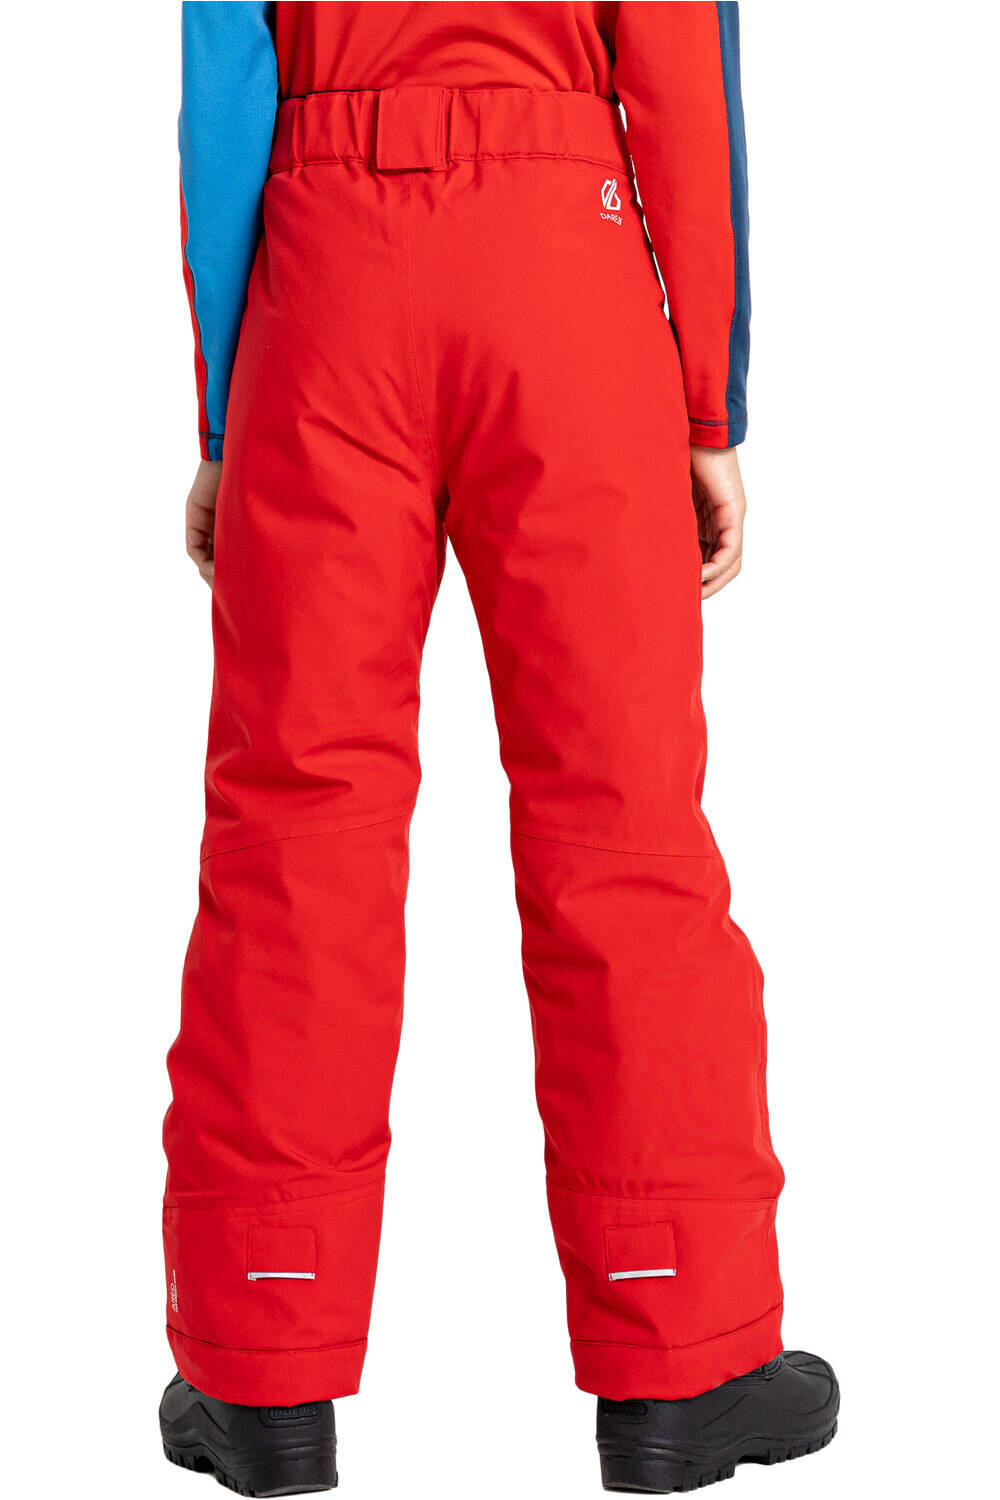 Dare2b pantalones esquí infantil Outmove II Pant 03